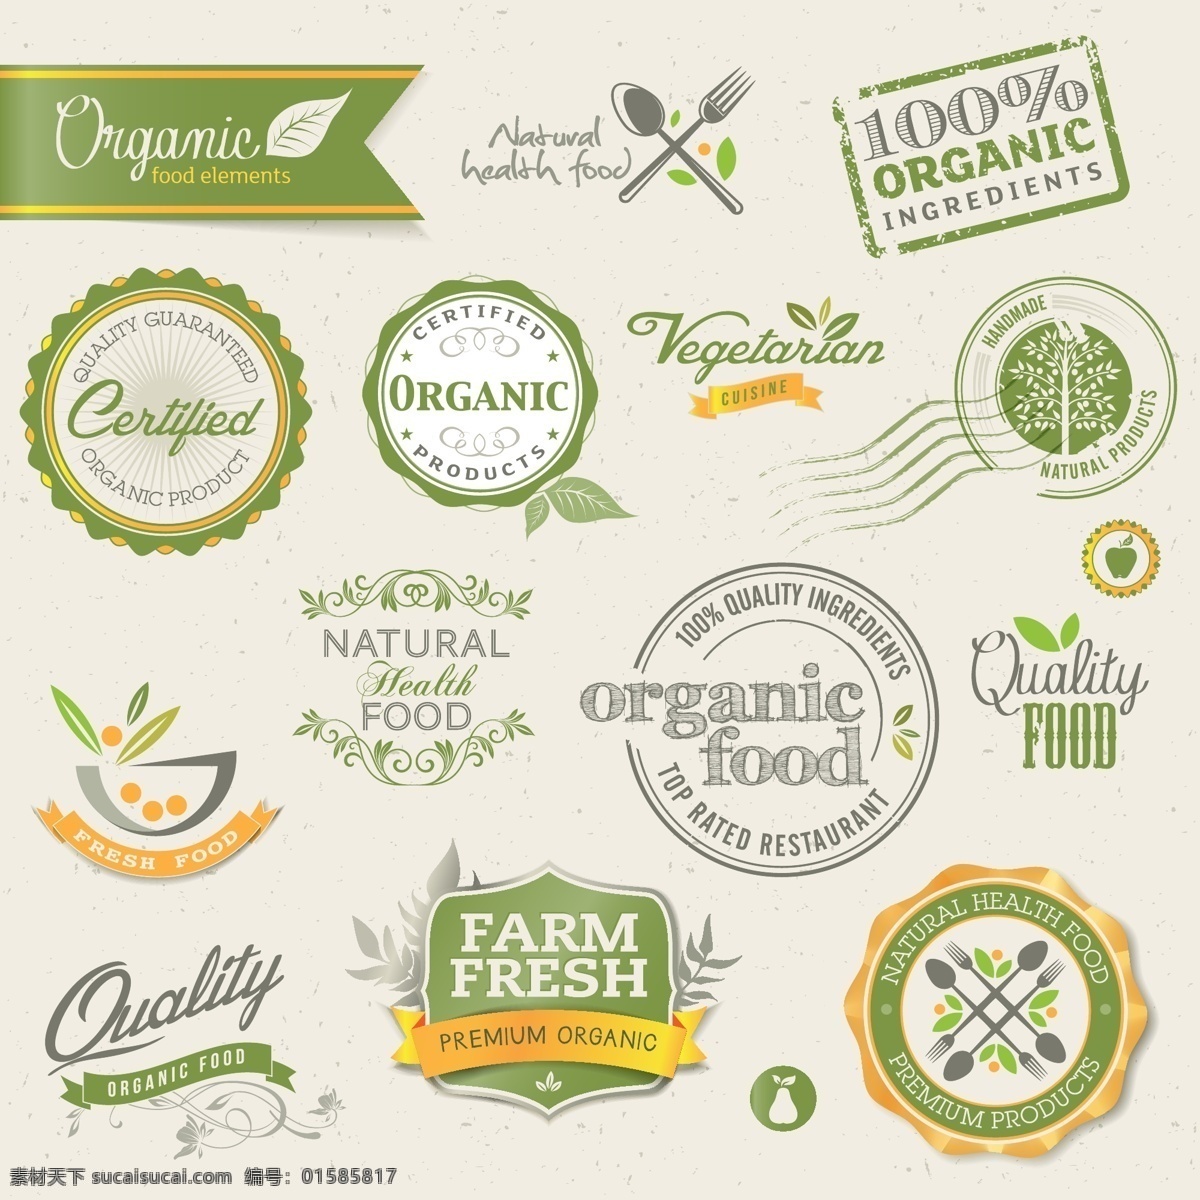 有机 食物 标贴 矢量 模板下载 印章 标签 环保 生态 绿色 有机食物 标志图标 矢量素材 黄色